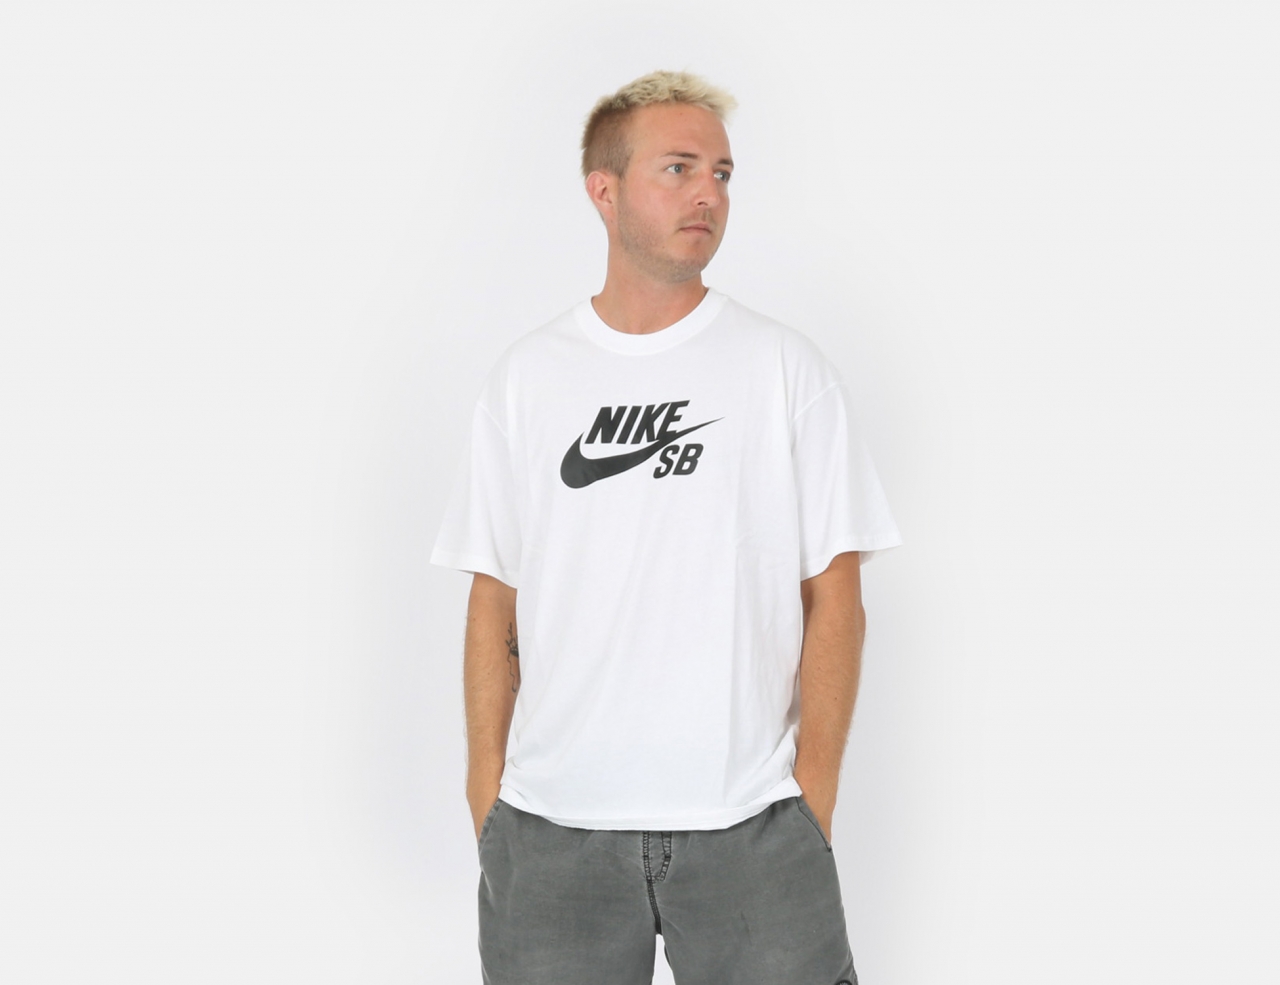 Nike SB Logo Skate T-Shirt - Black